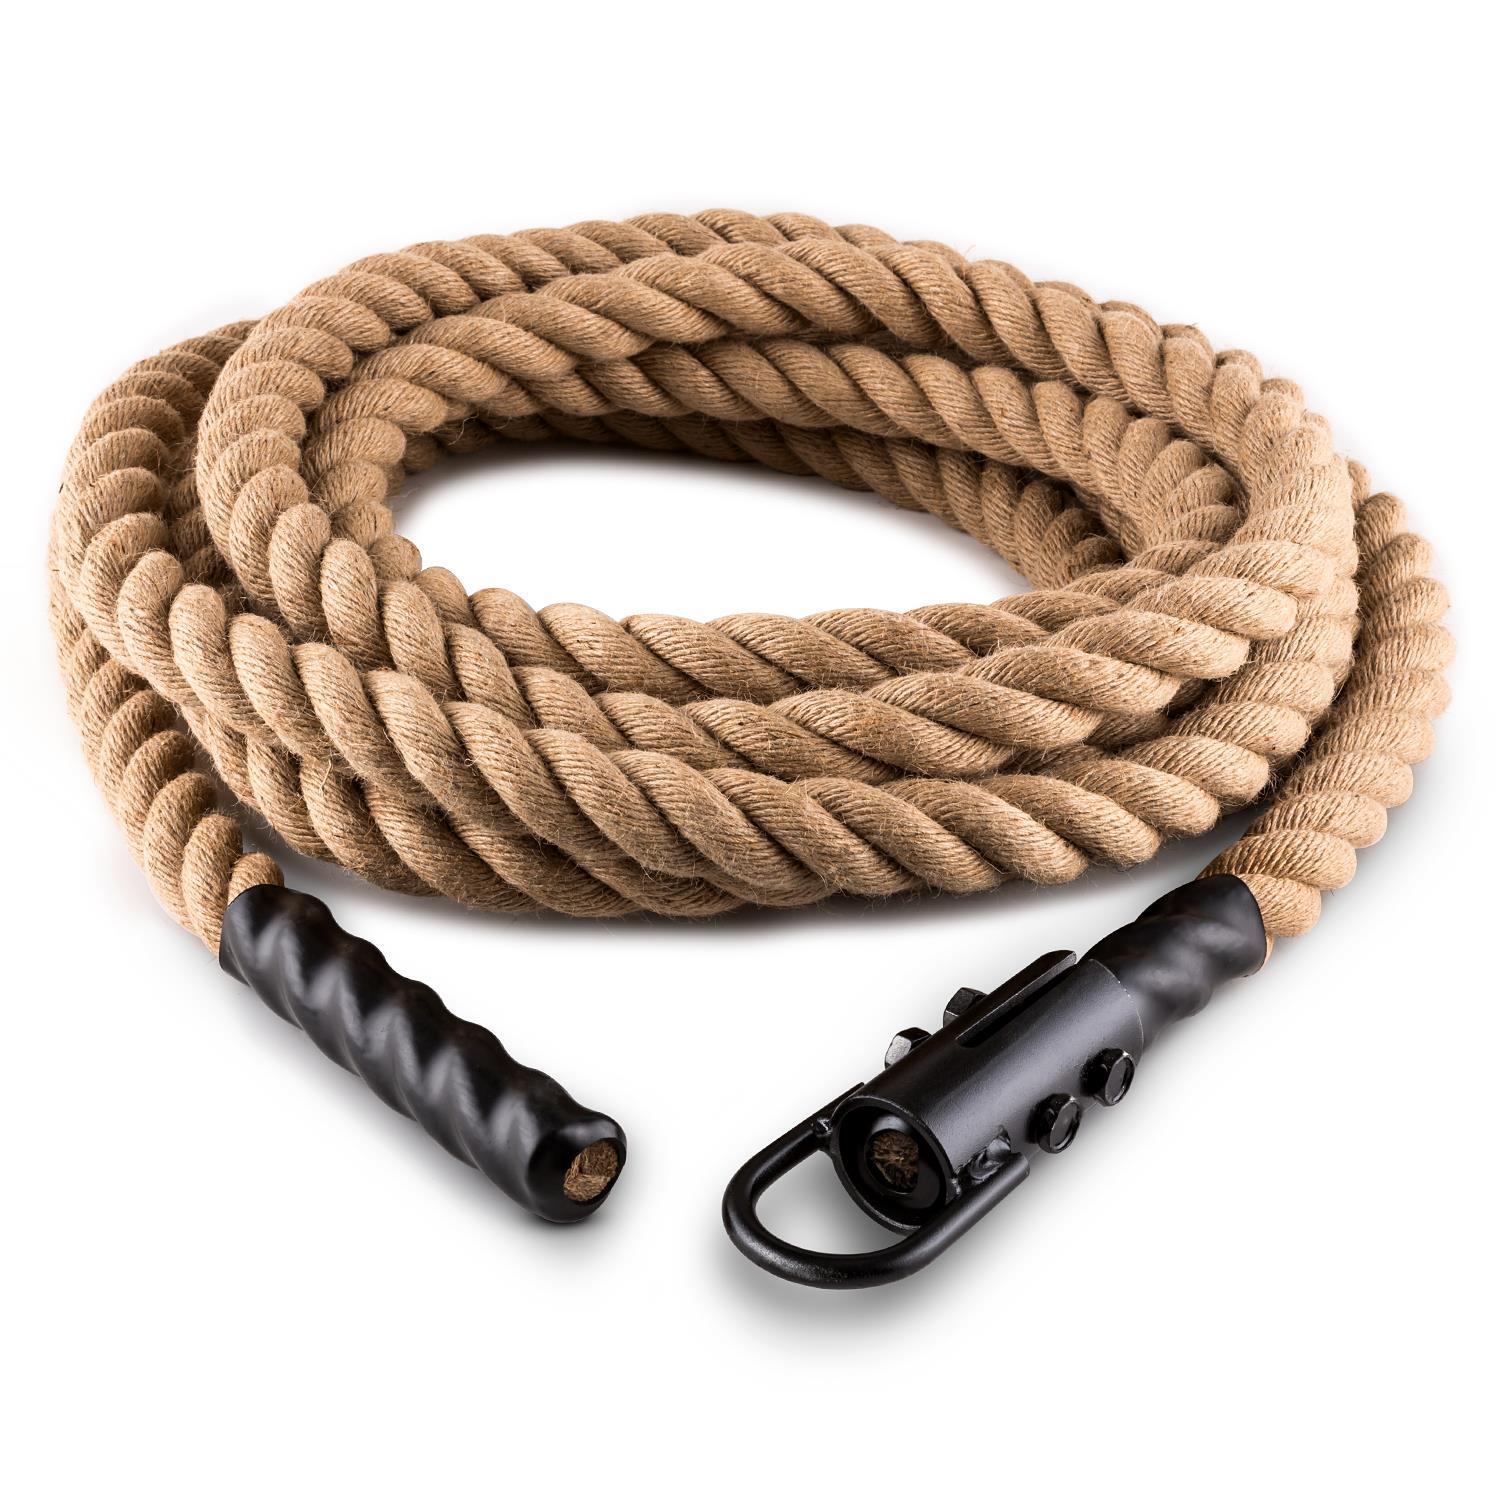 natural fibre rope.jpg